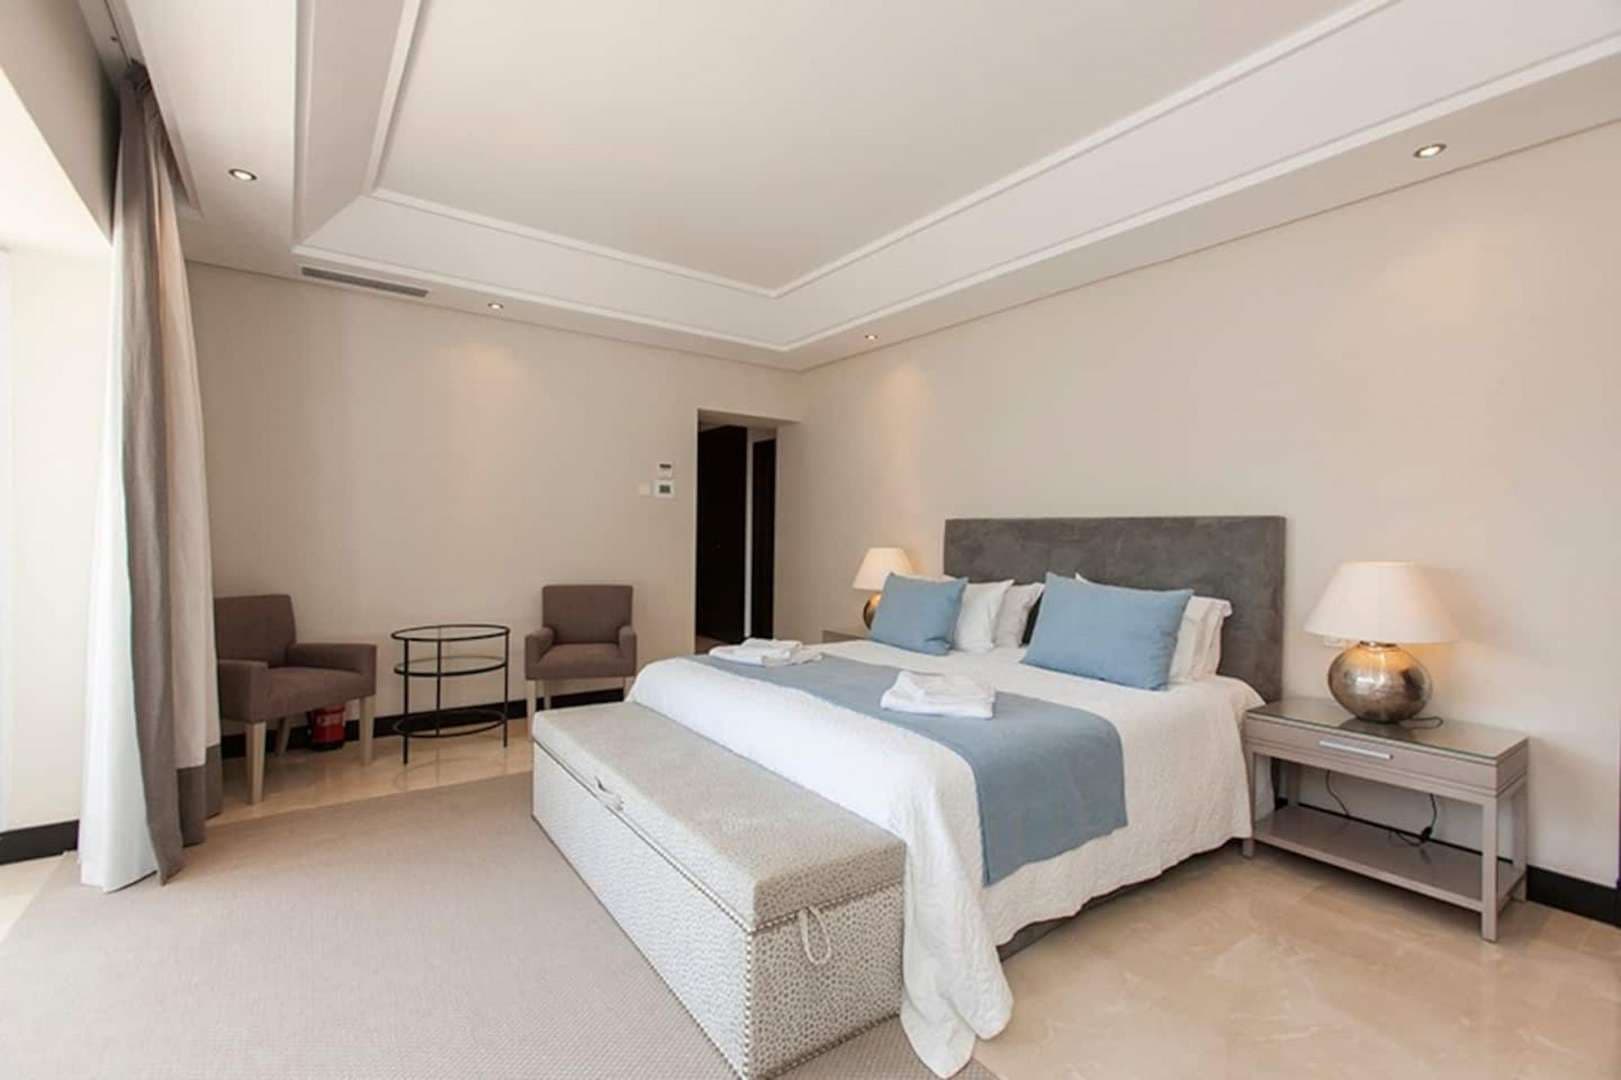 4 Bedroom Villa For Sale Marbella Club Hotel Lp05819 998c02ab6599800.jpg